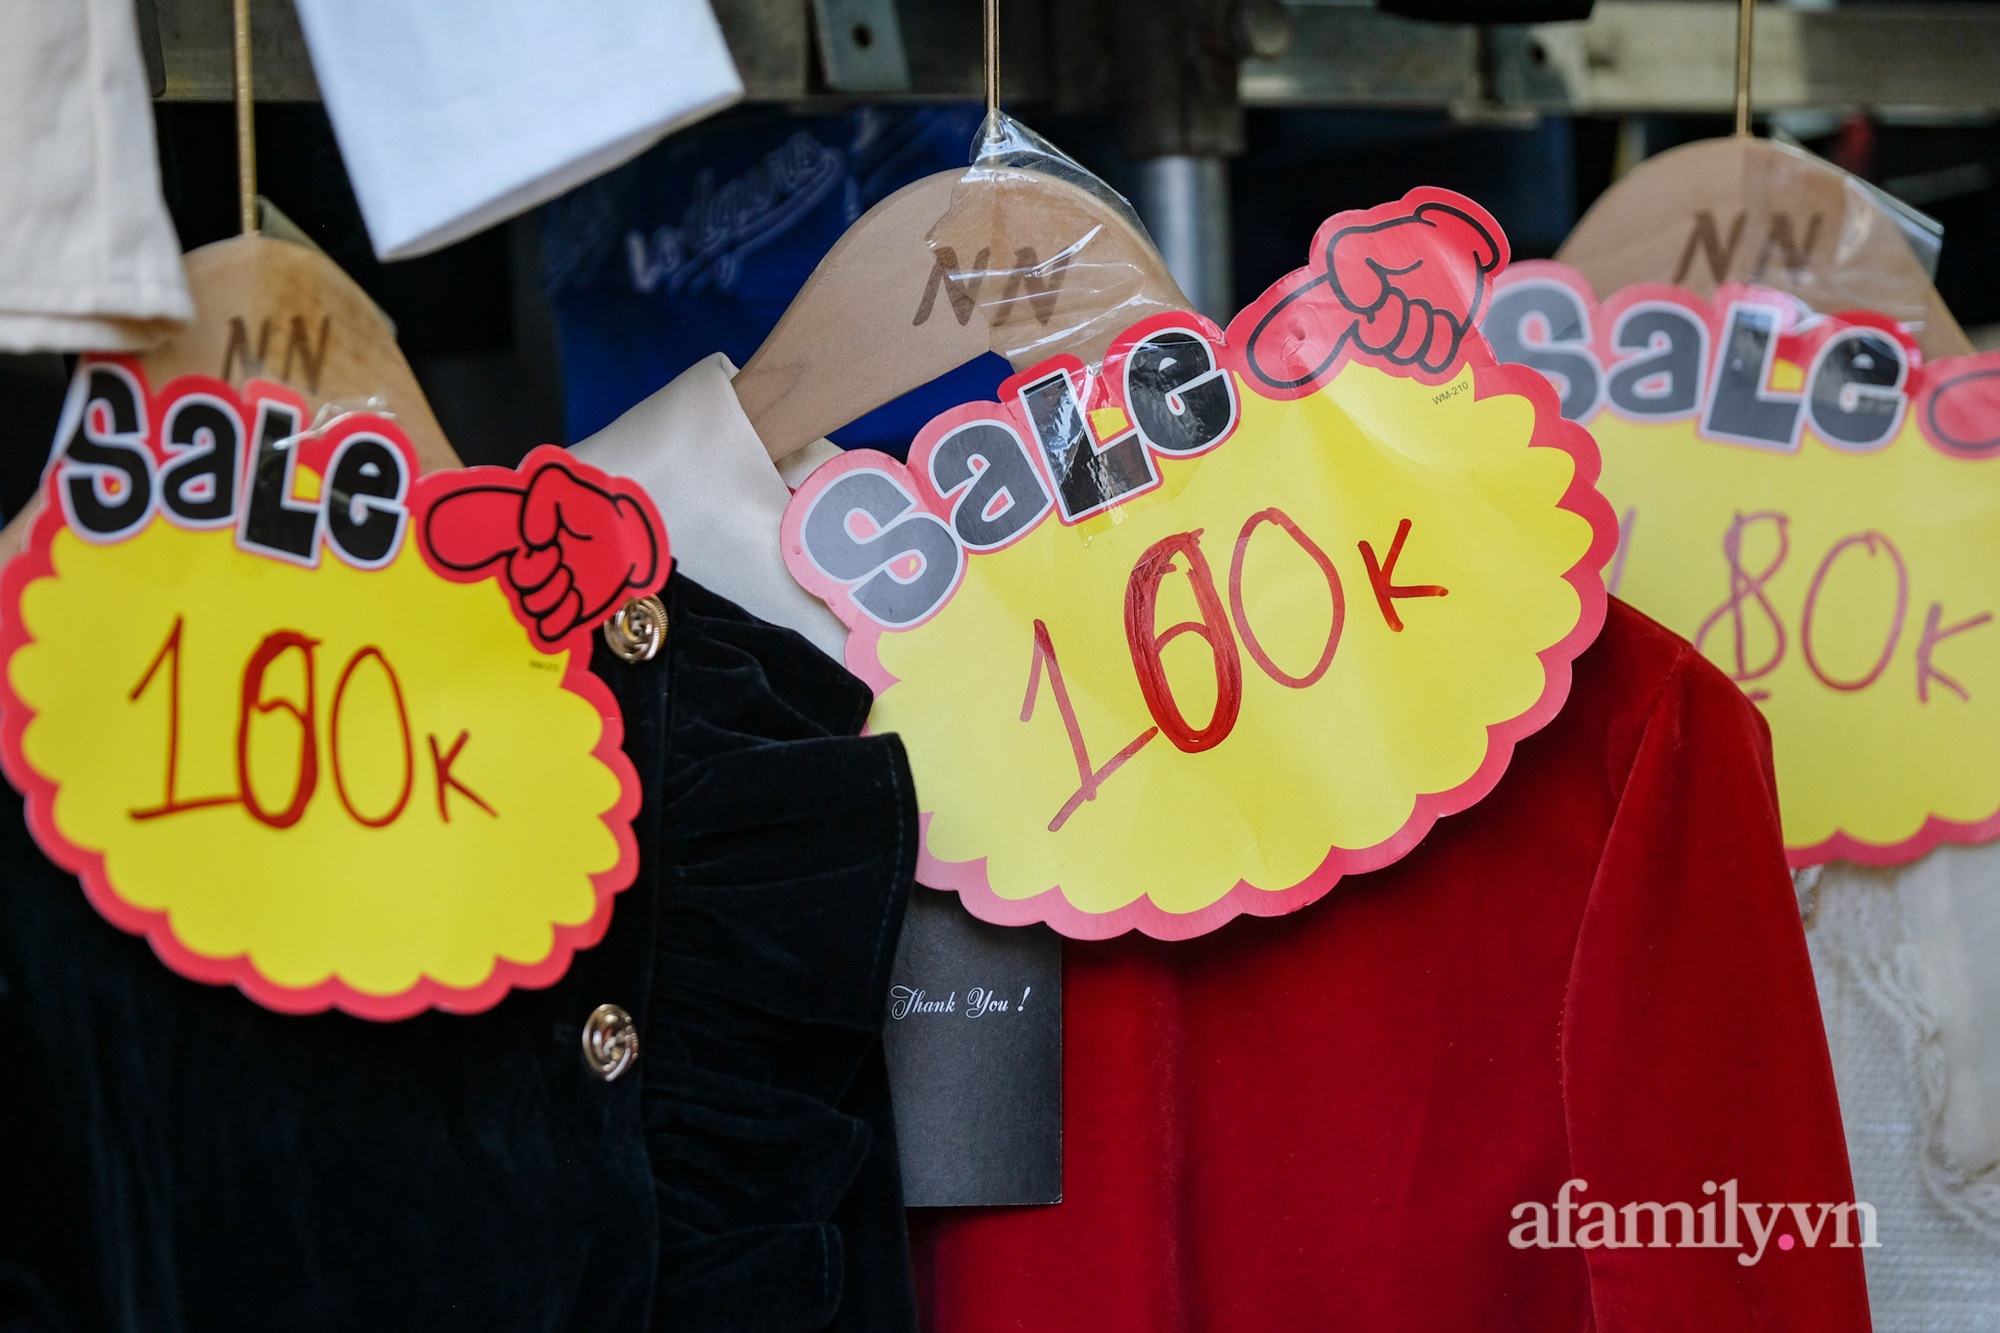 Chợ thời trang lớn nhất Hà Nội treo biển thanh lý &quot;tụt nóc&quot; để nghỉ Tết: Hàng ngàn sản phẩm đồng giá chỉ từ 80k hút khách đổ về mua sắm - Ảnh 11.